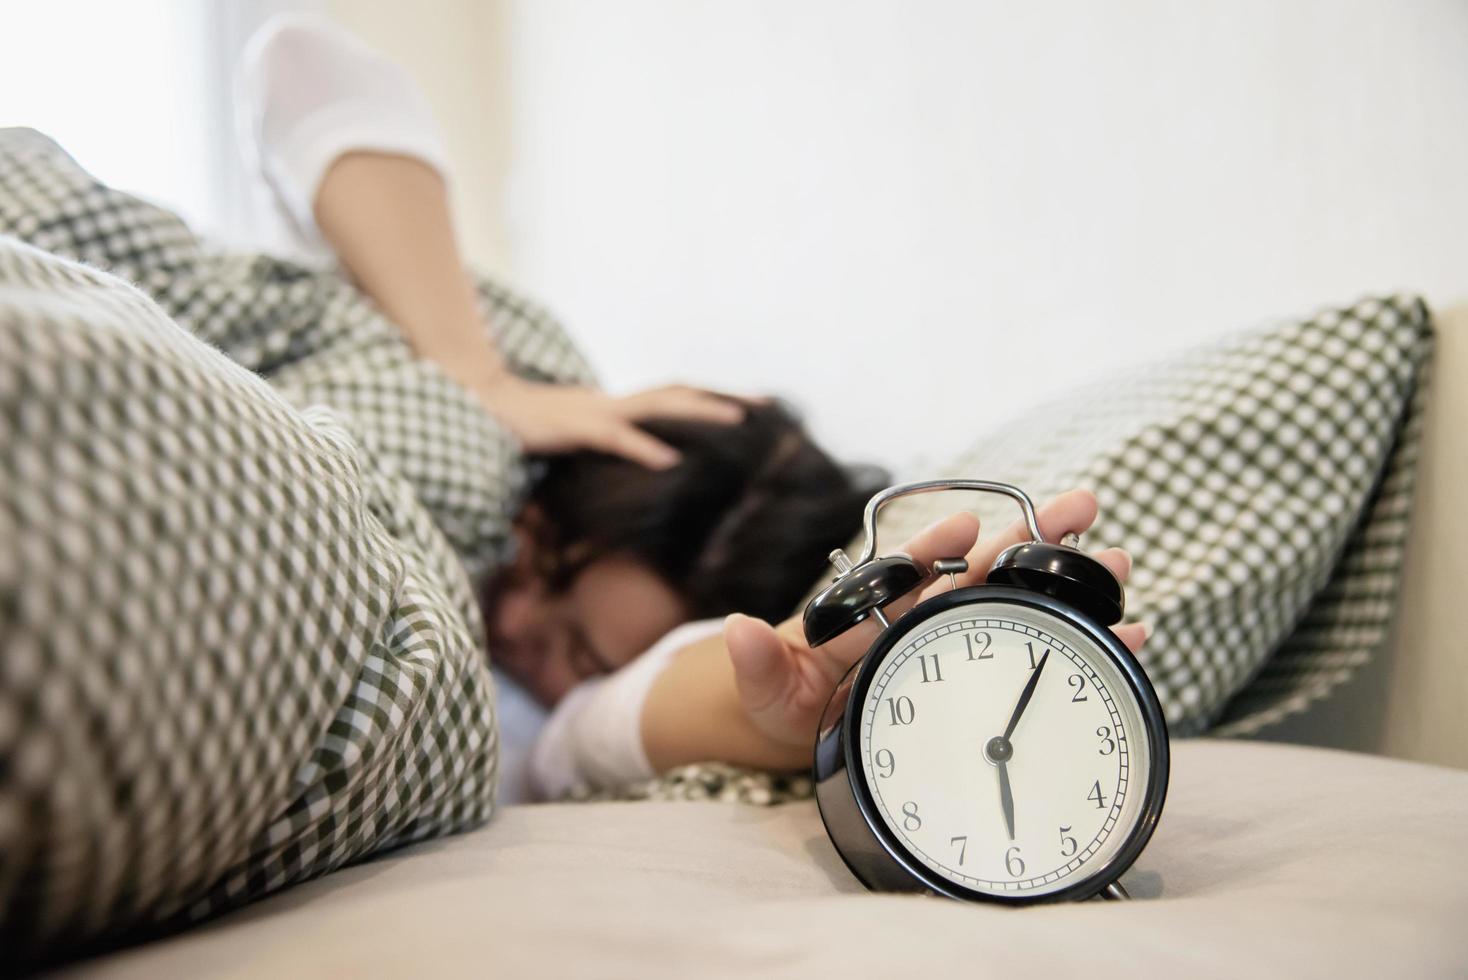 mujer soñolienta que llega a sostener el despertador por la mañana con un despertar tardío - concepto de vida diaria en casa foto